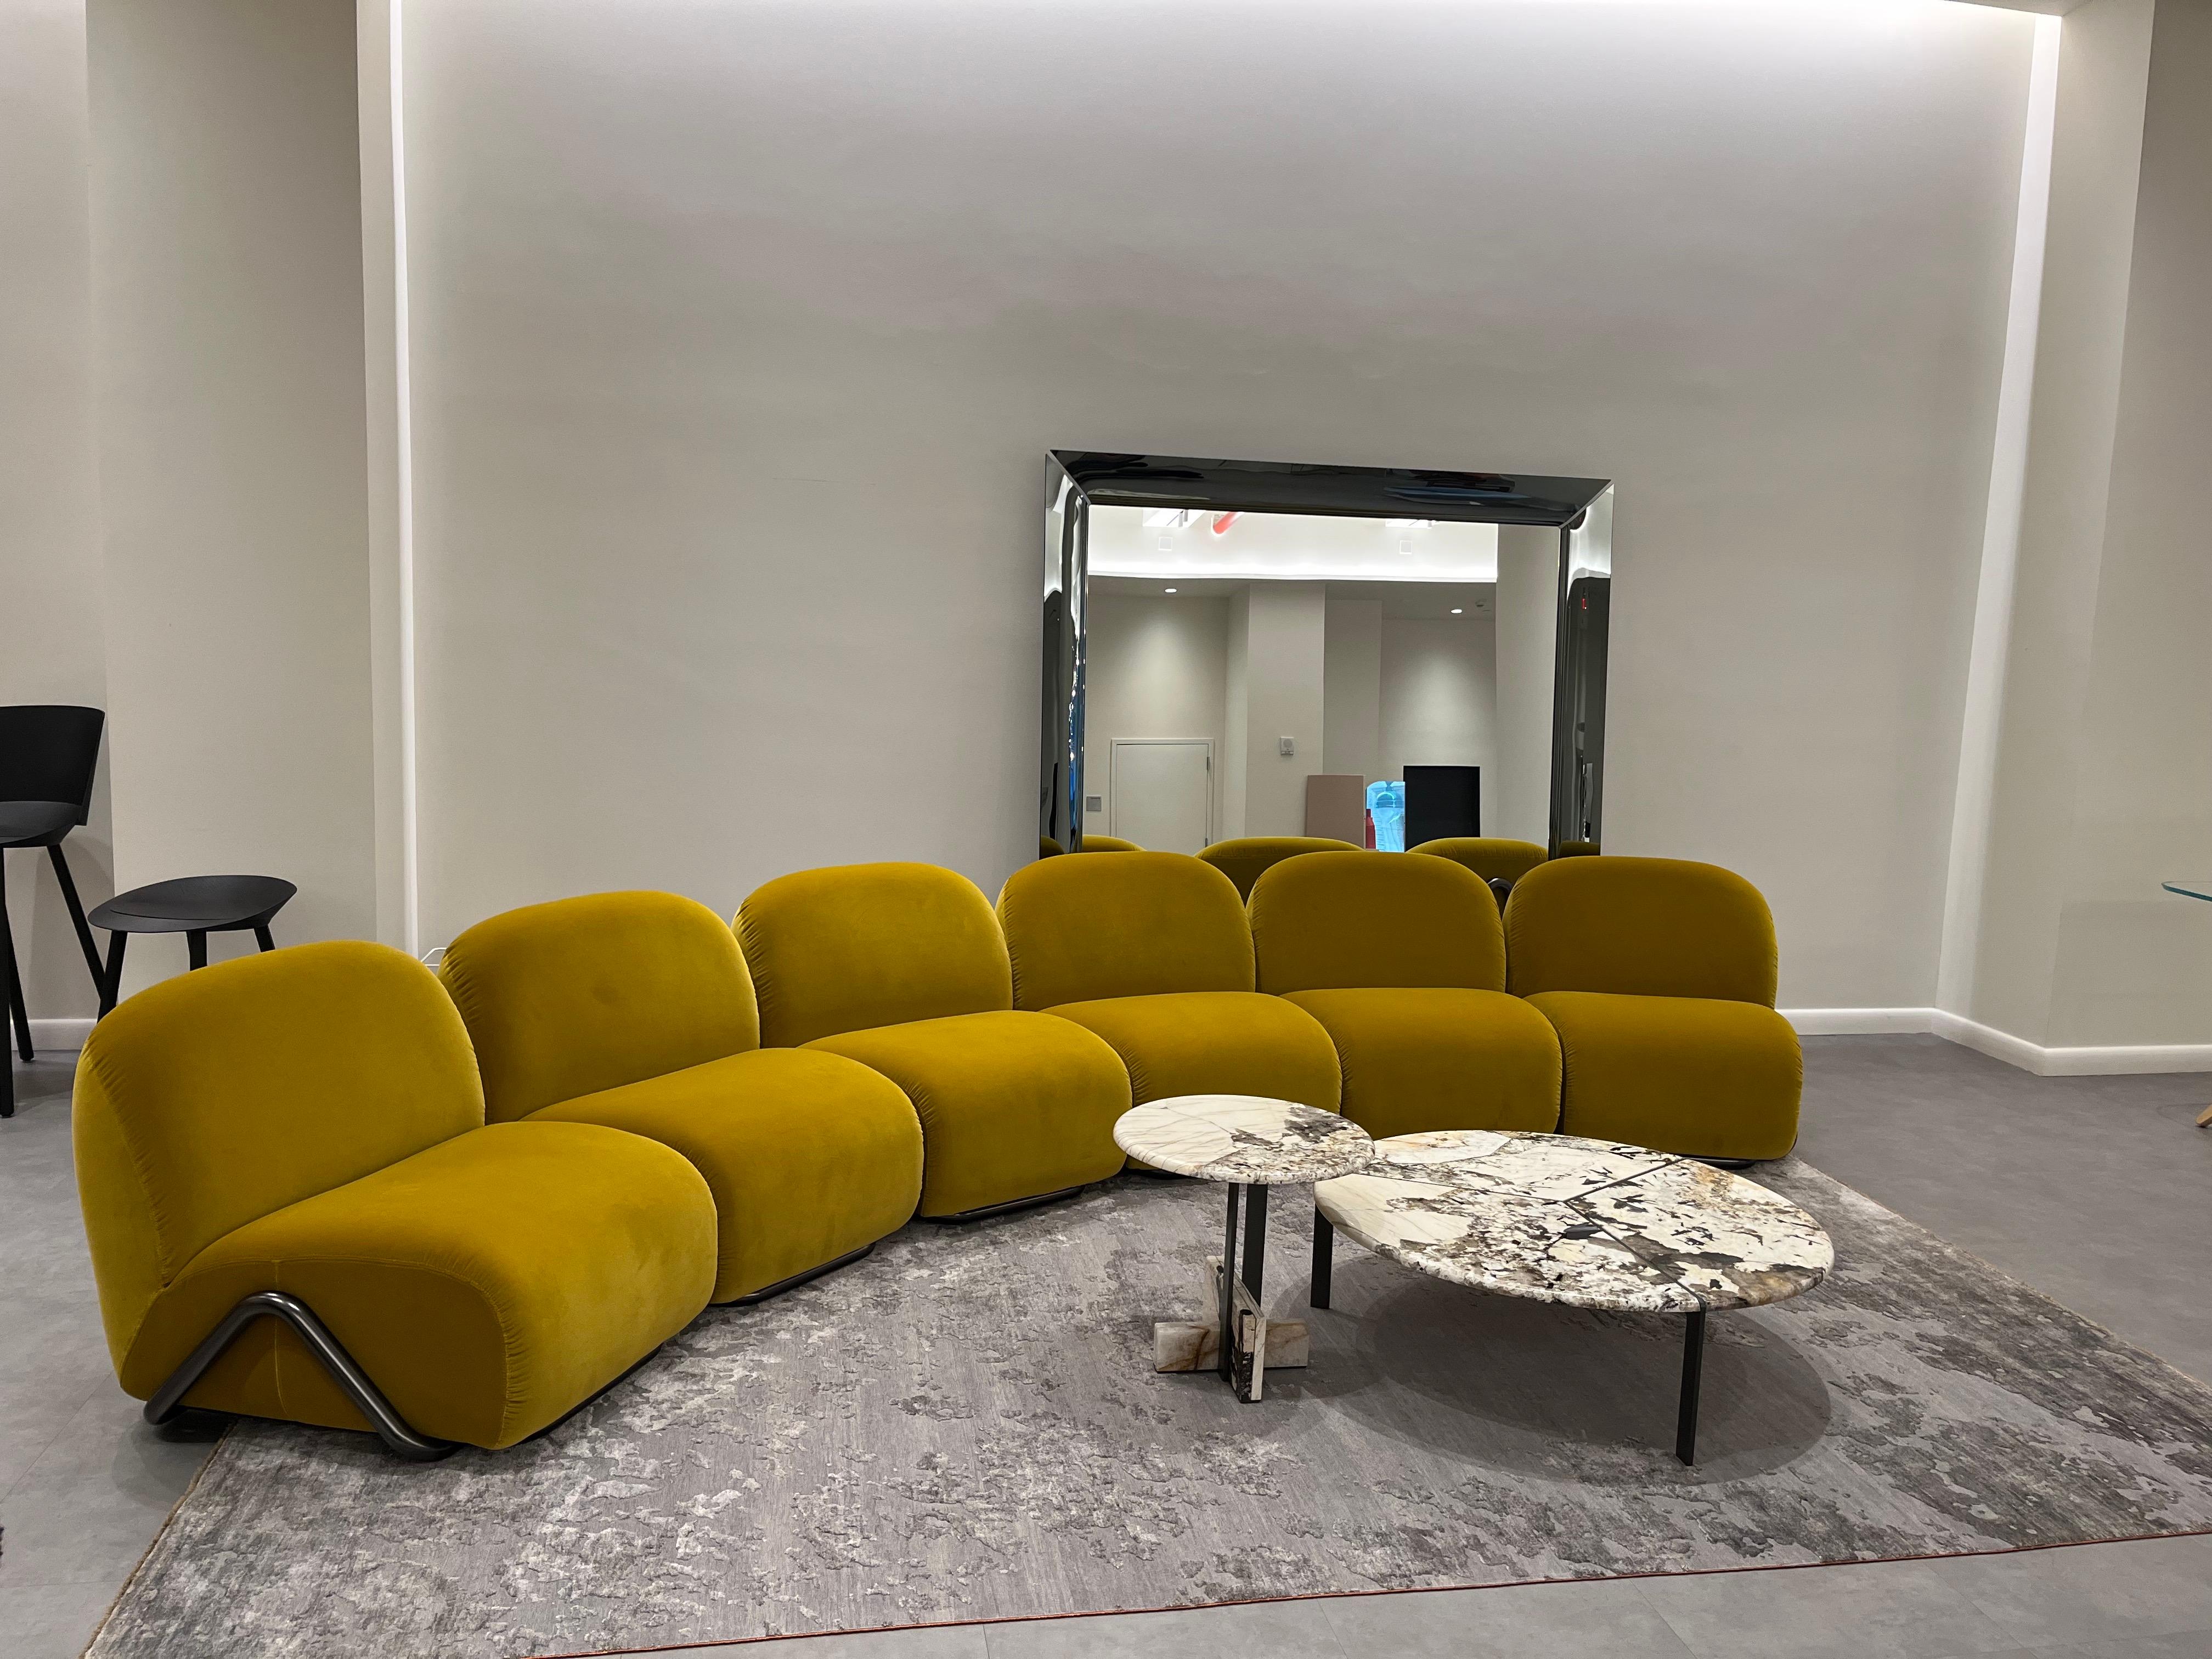 Tacchini Victoria Sectional Sofa Designed by David/Nicolas in STOCK 4